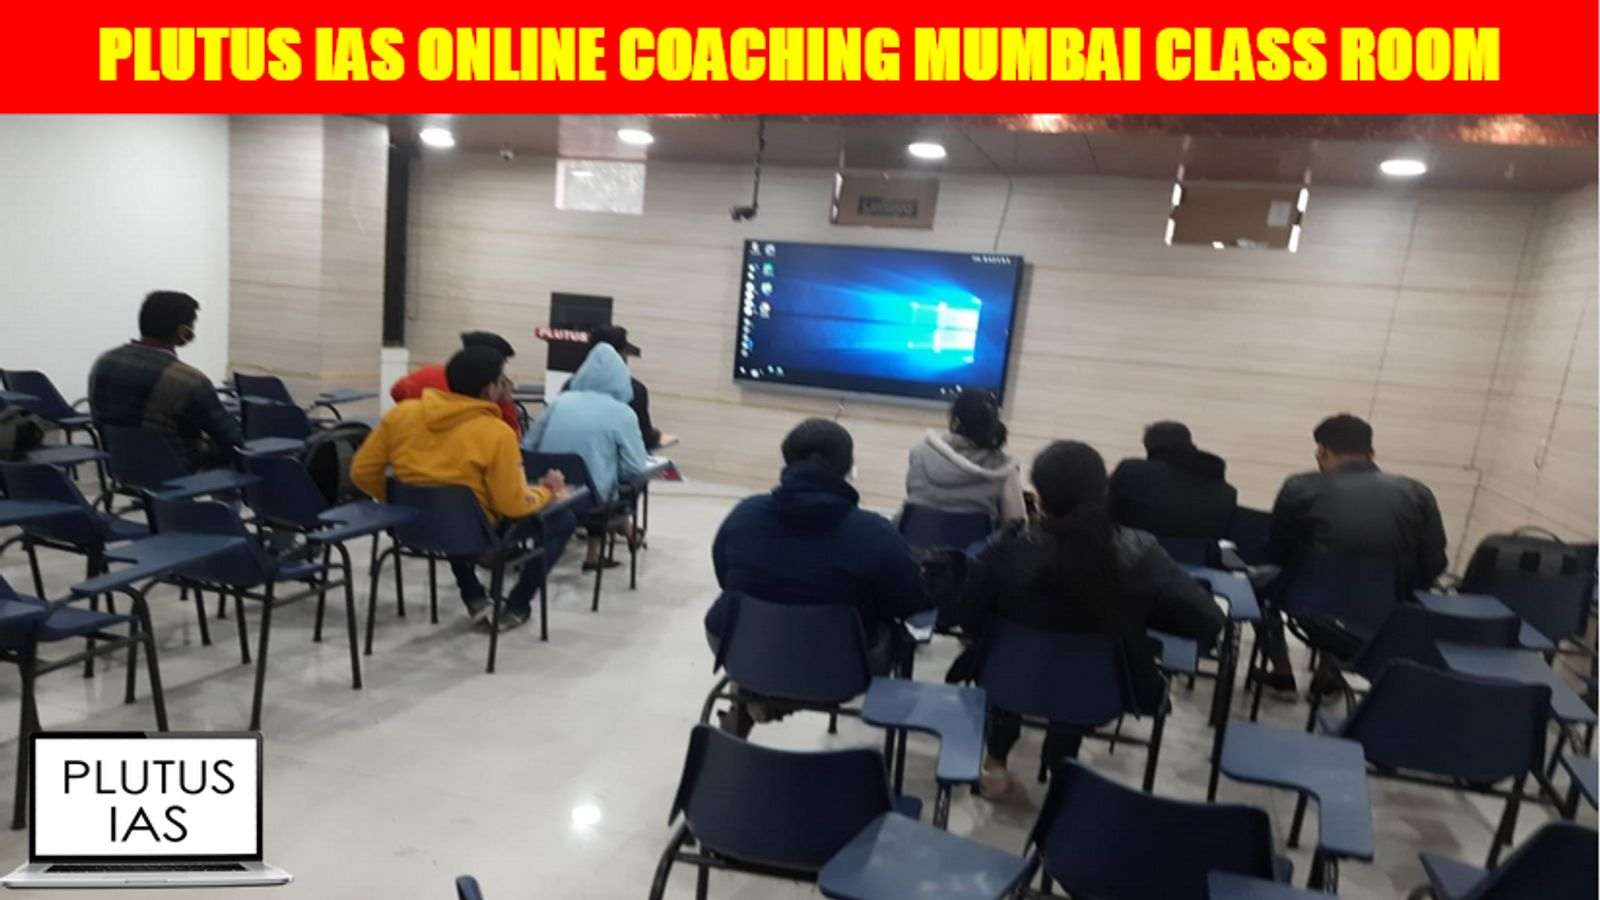 Plutus IAS Online Coaching Mumbai Class Room